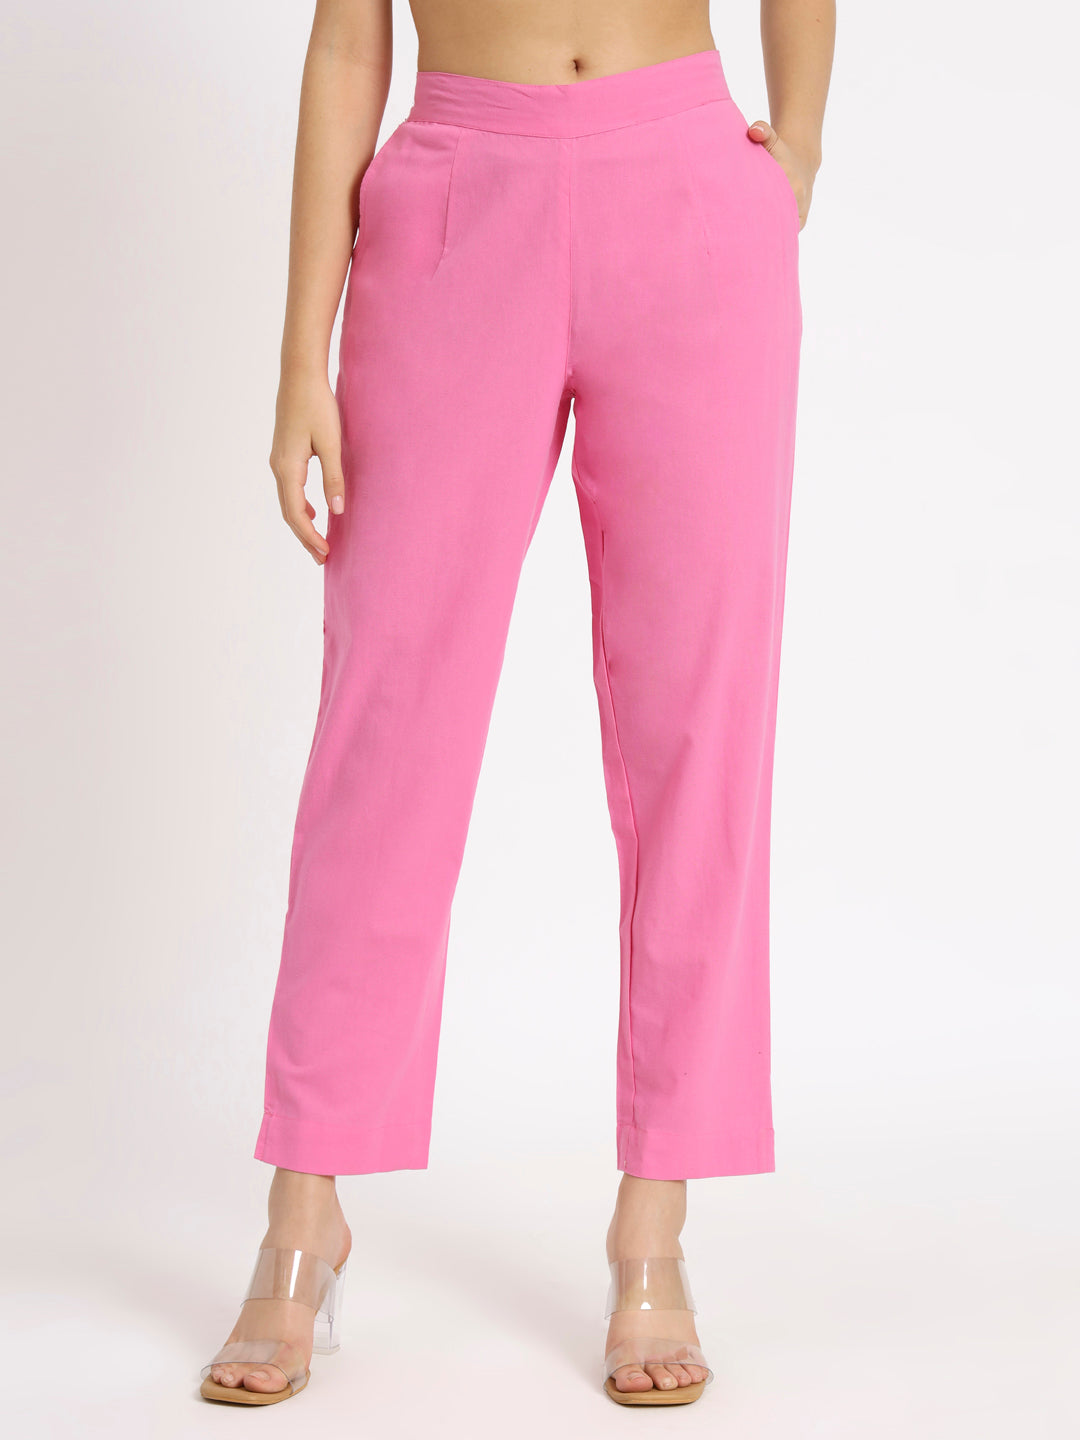 Blush Pink Cotton Pants